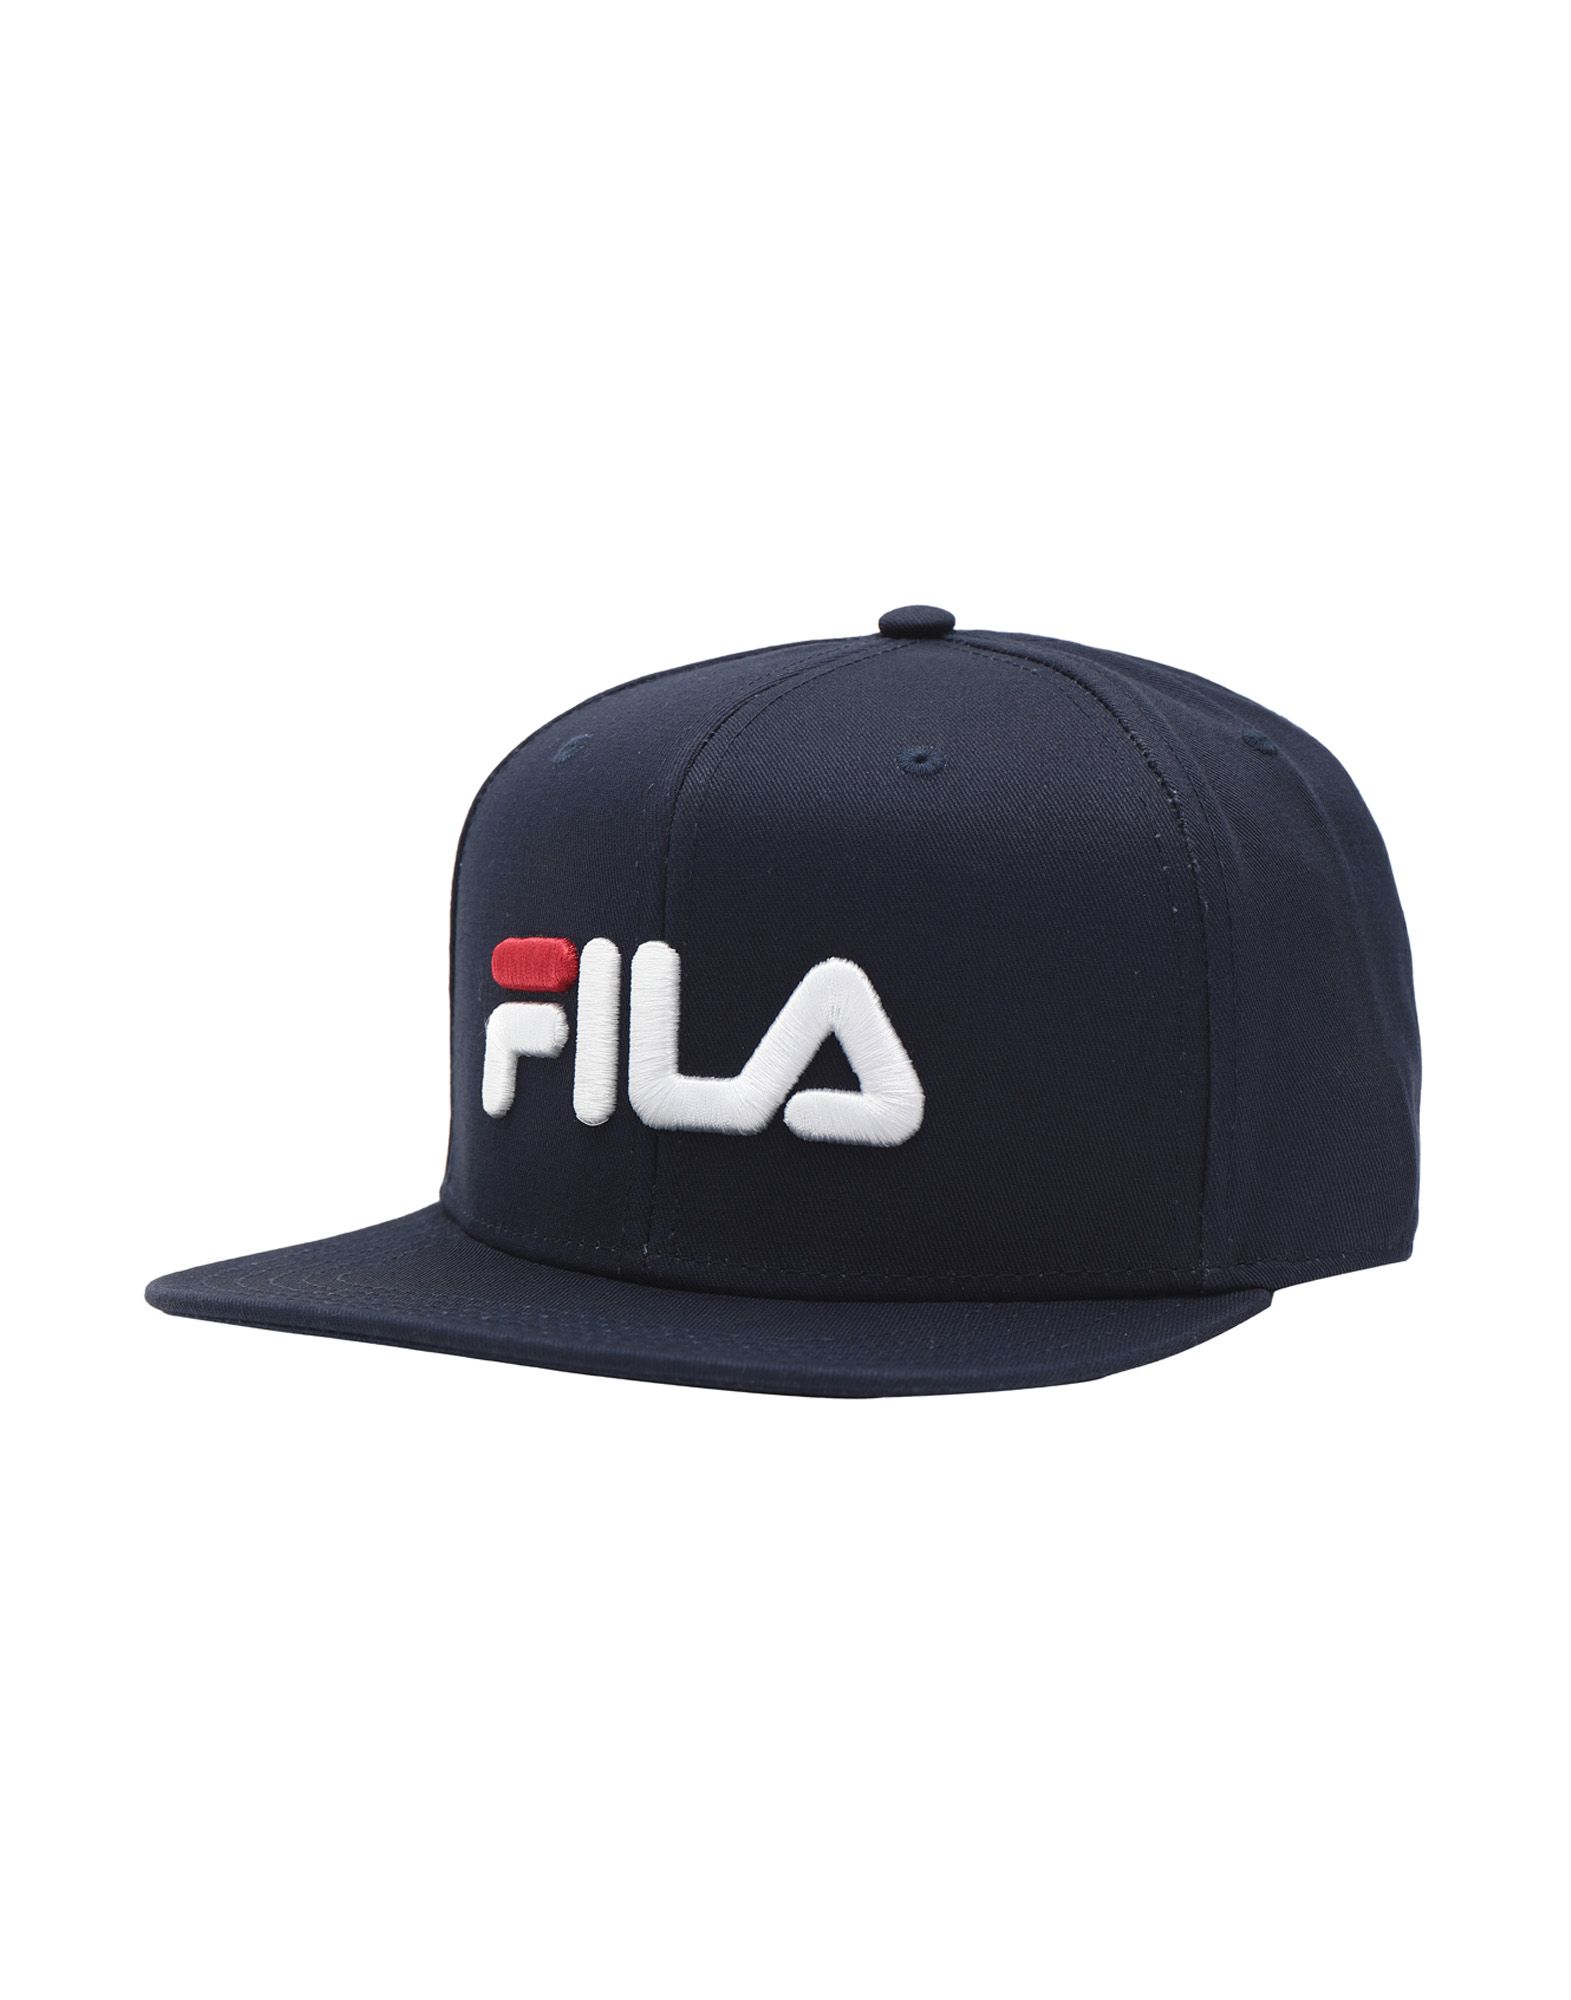 《送料無料》FILA HERITAGE メンズ 帽子 ブルー one size コットン 100% 6 PANEL CLASSIC CAP SNAP BACK